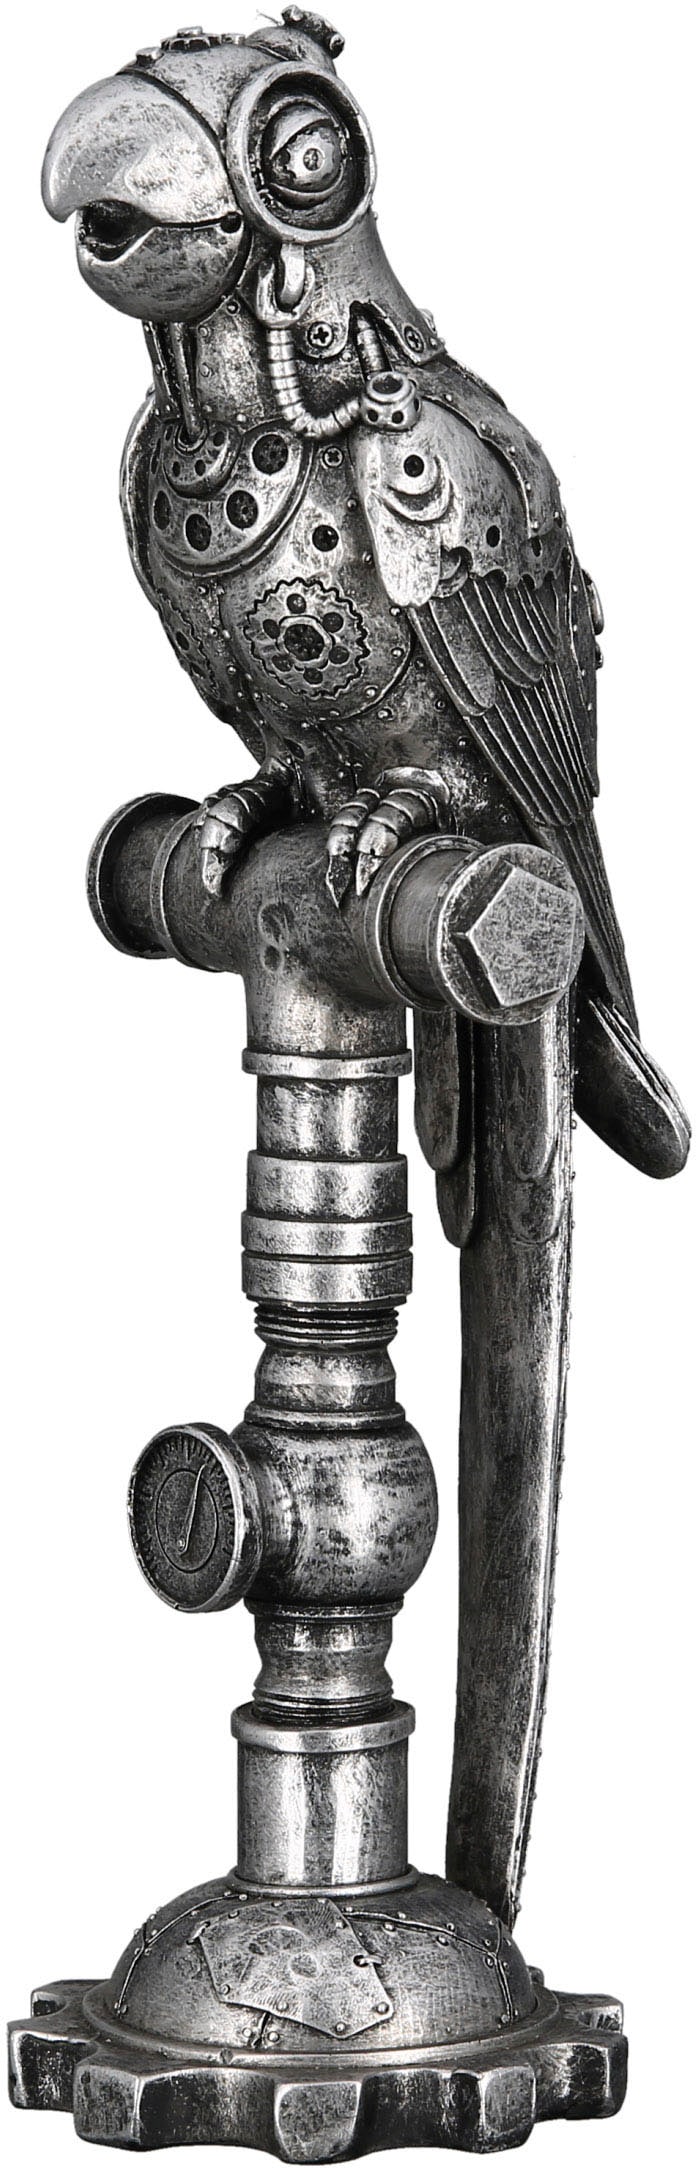 auf by Gilde Tierfigur kaufen »Skulptur Steampunk« Casablanca Rechnung Parrot